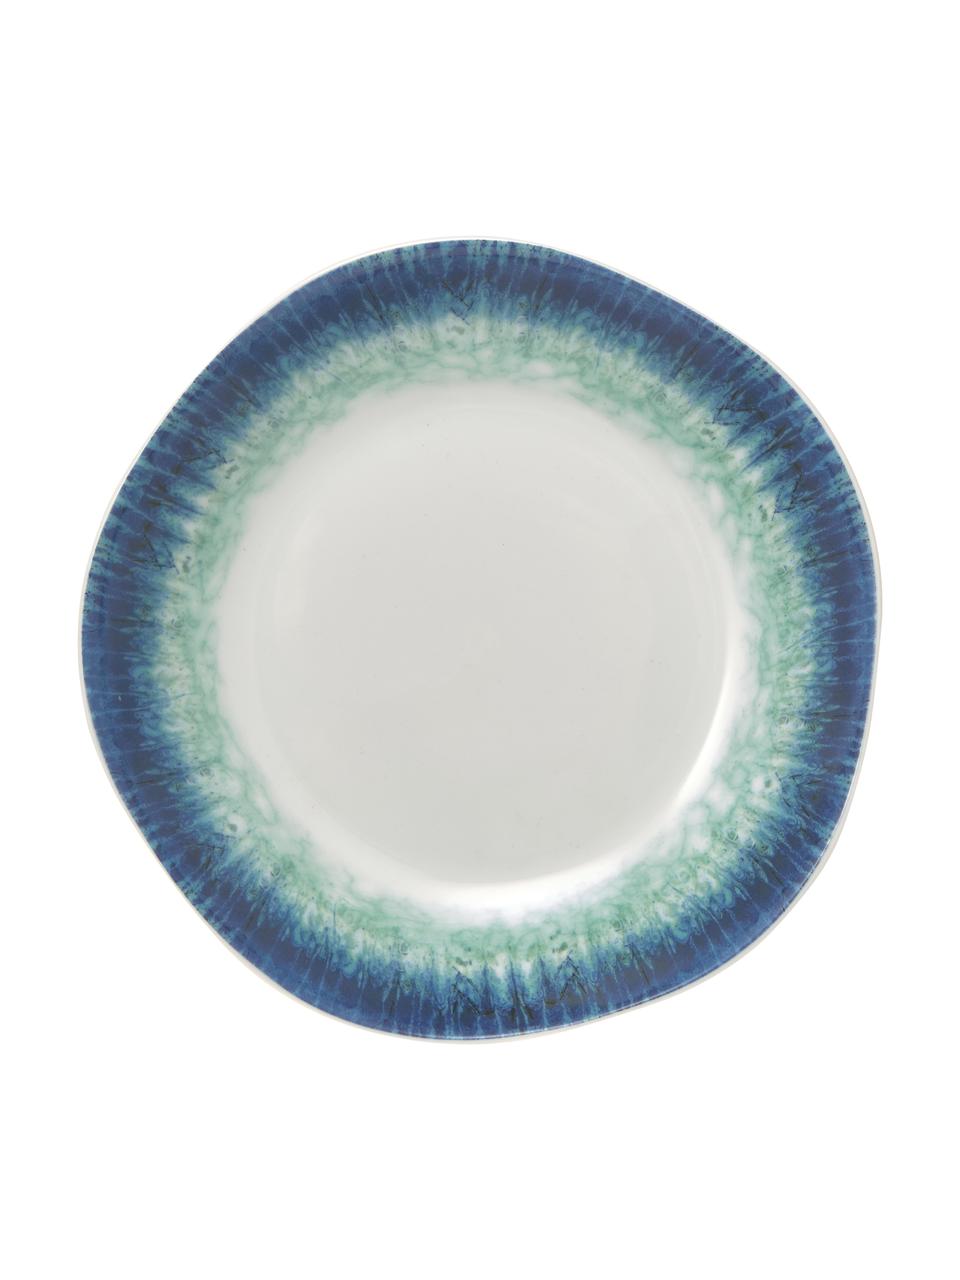 Sada porcelánového nádobí s barevným přechodem Antille, pro 6 osob (18 dílů), Porcelán, Odstíny modré, Sada s různými velikostmi